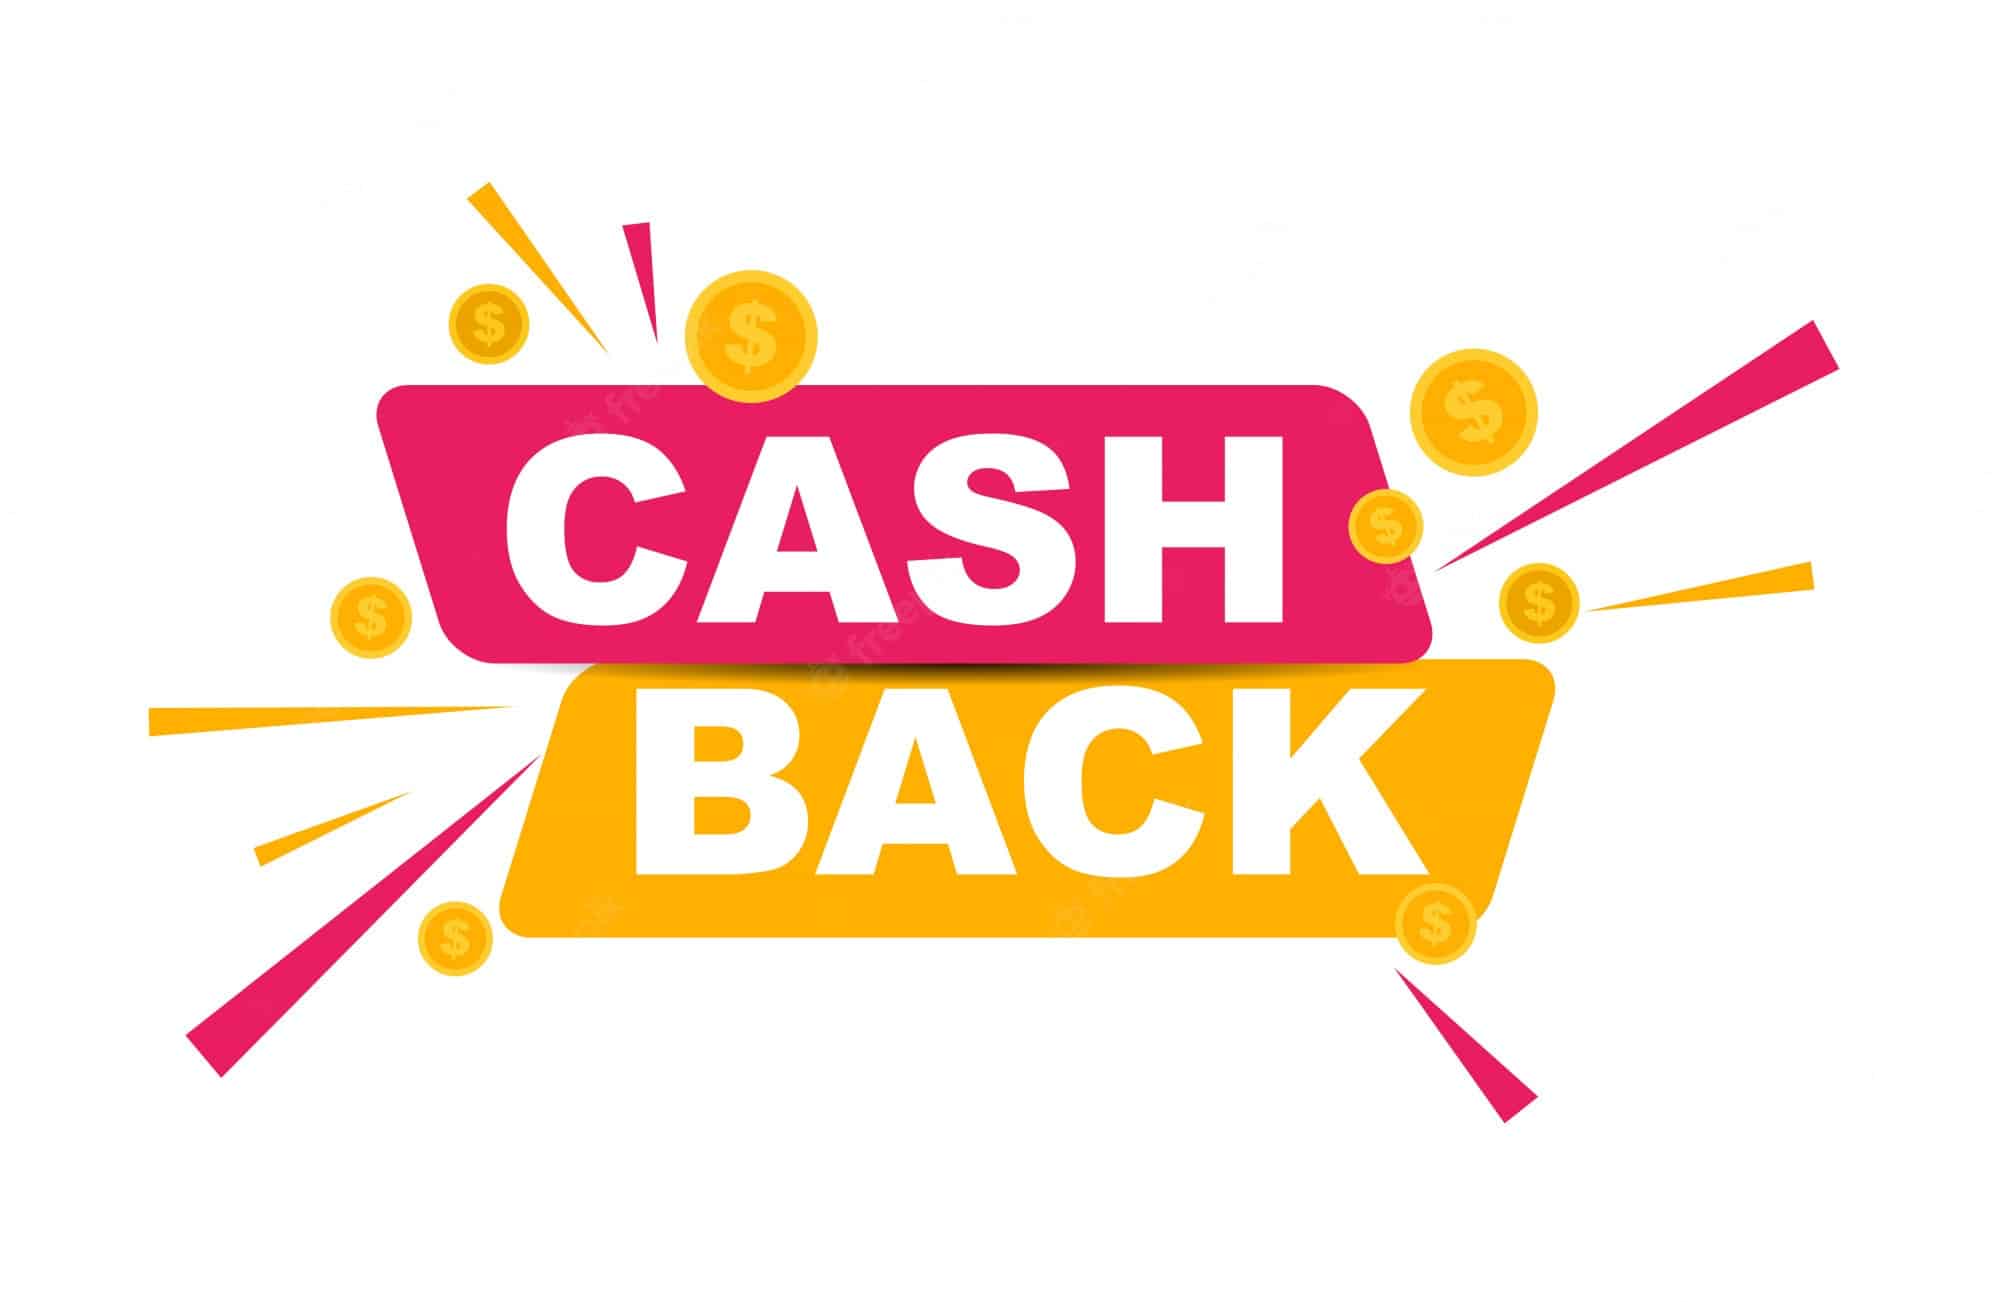 Cashback image